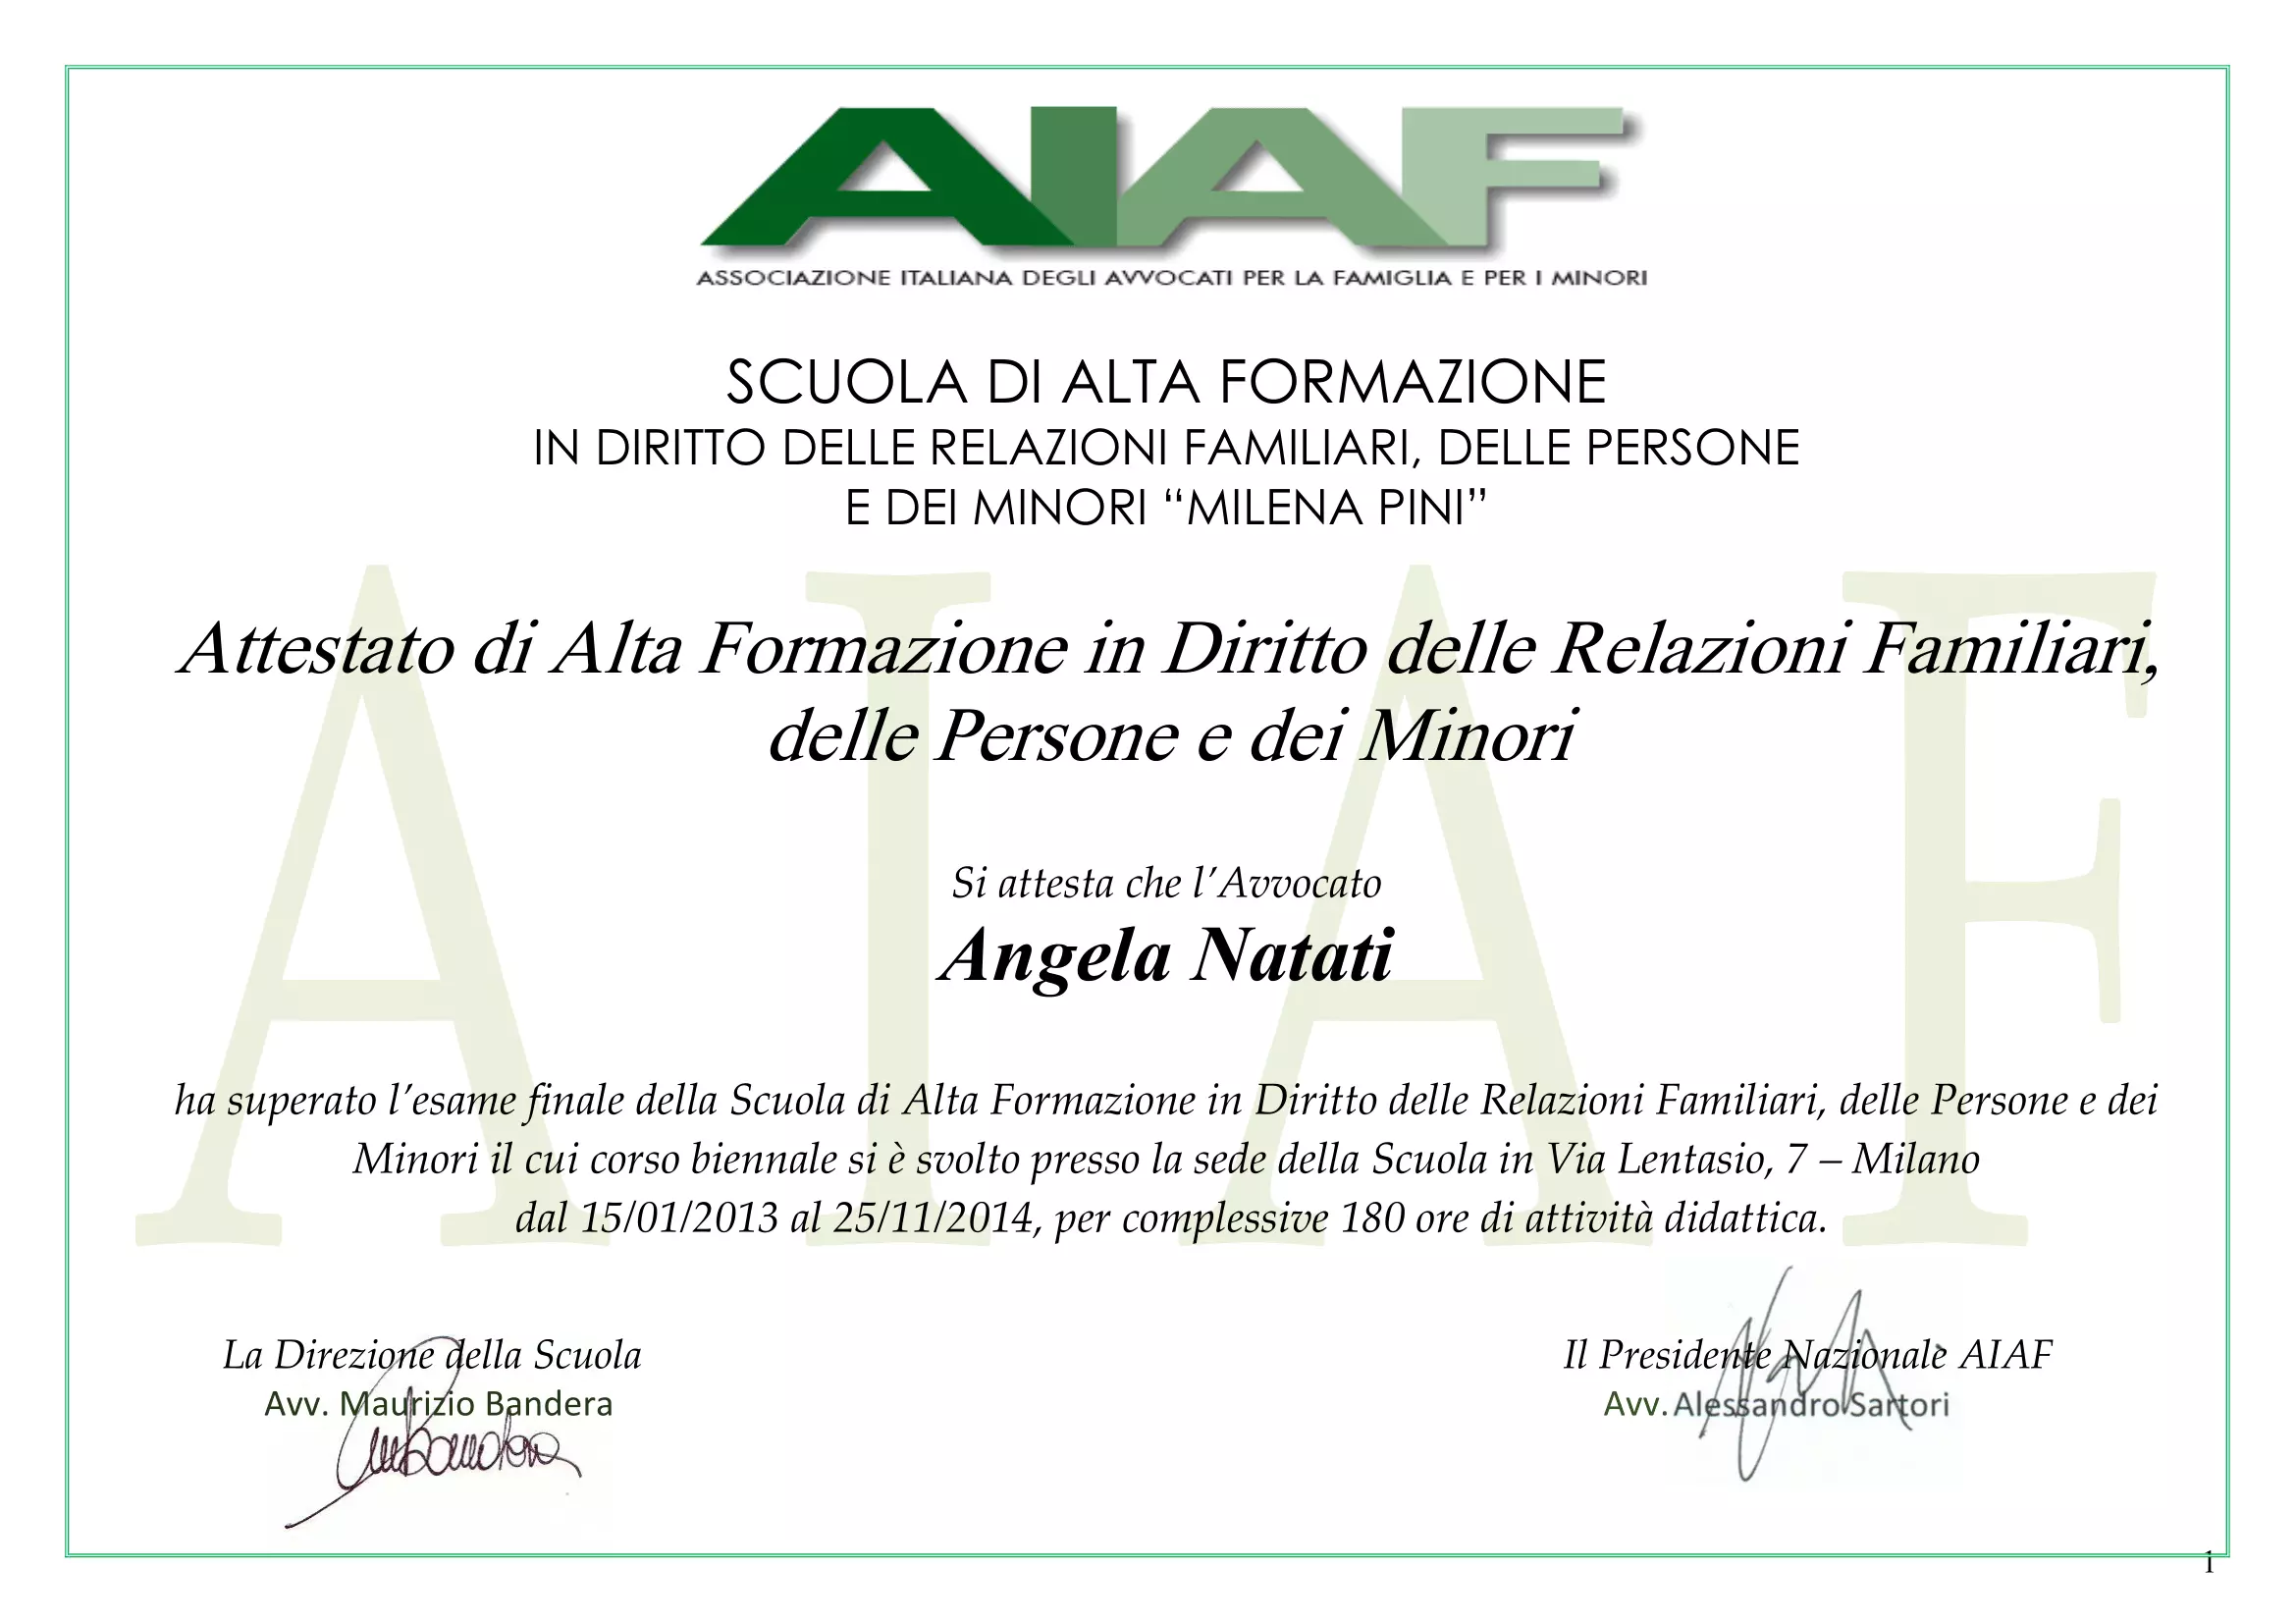 Attestato Associazione Italiana Avvocati per la Famiglia e per i minori (2013)